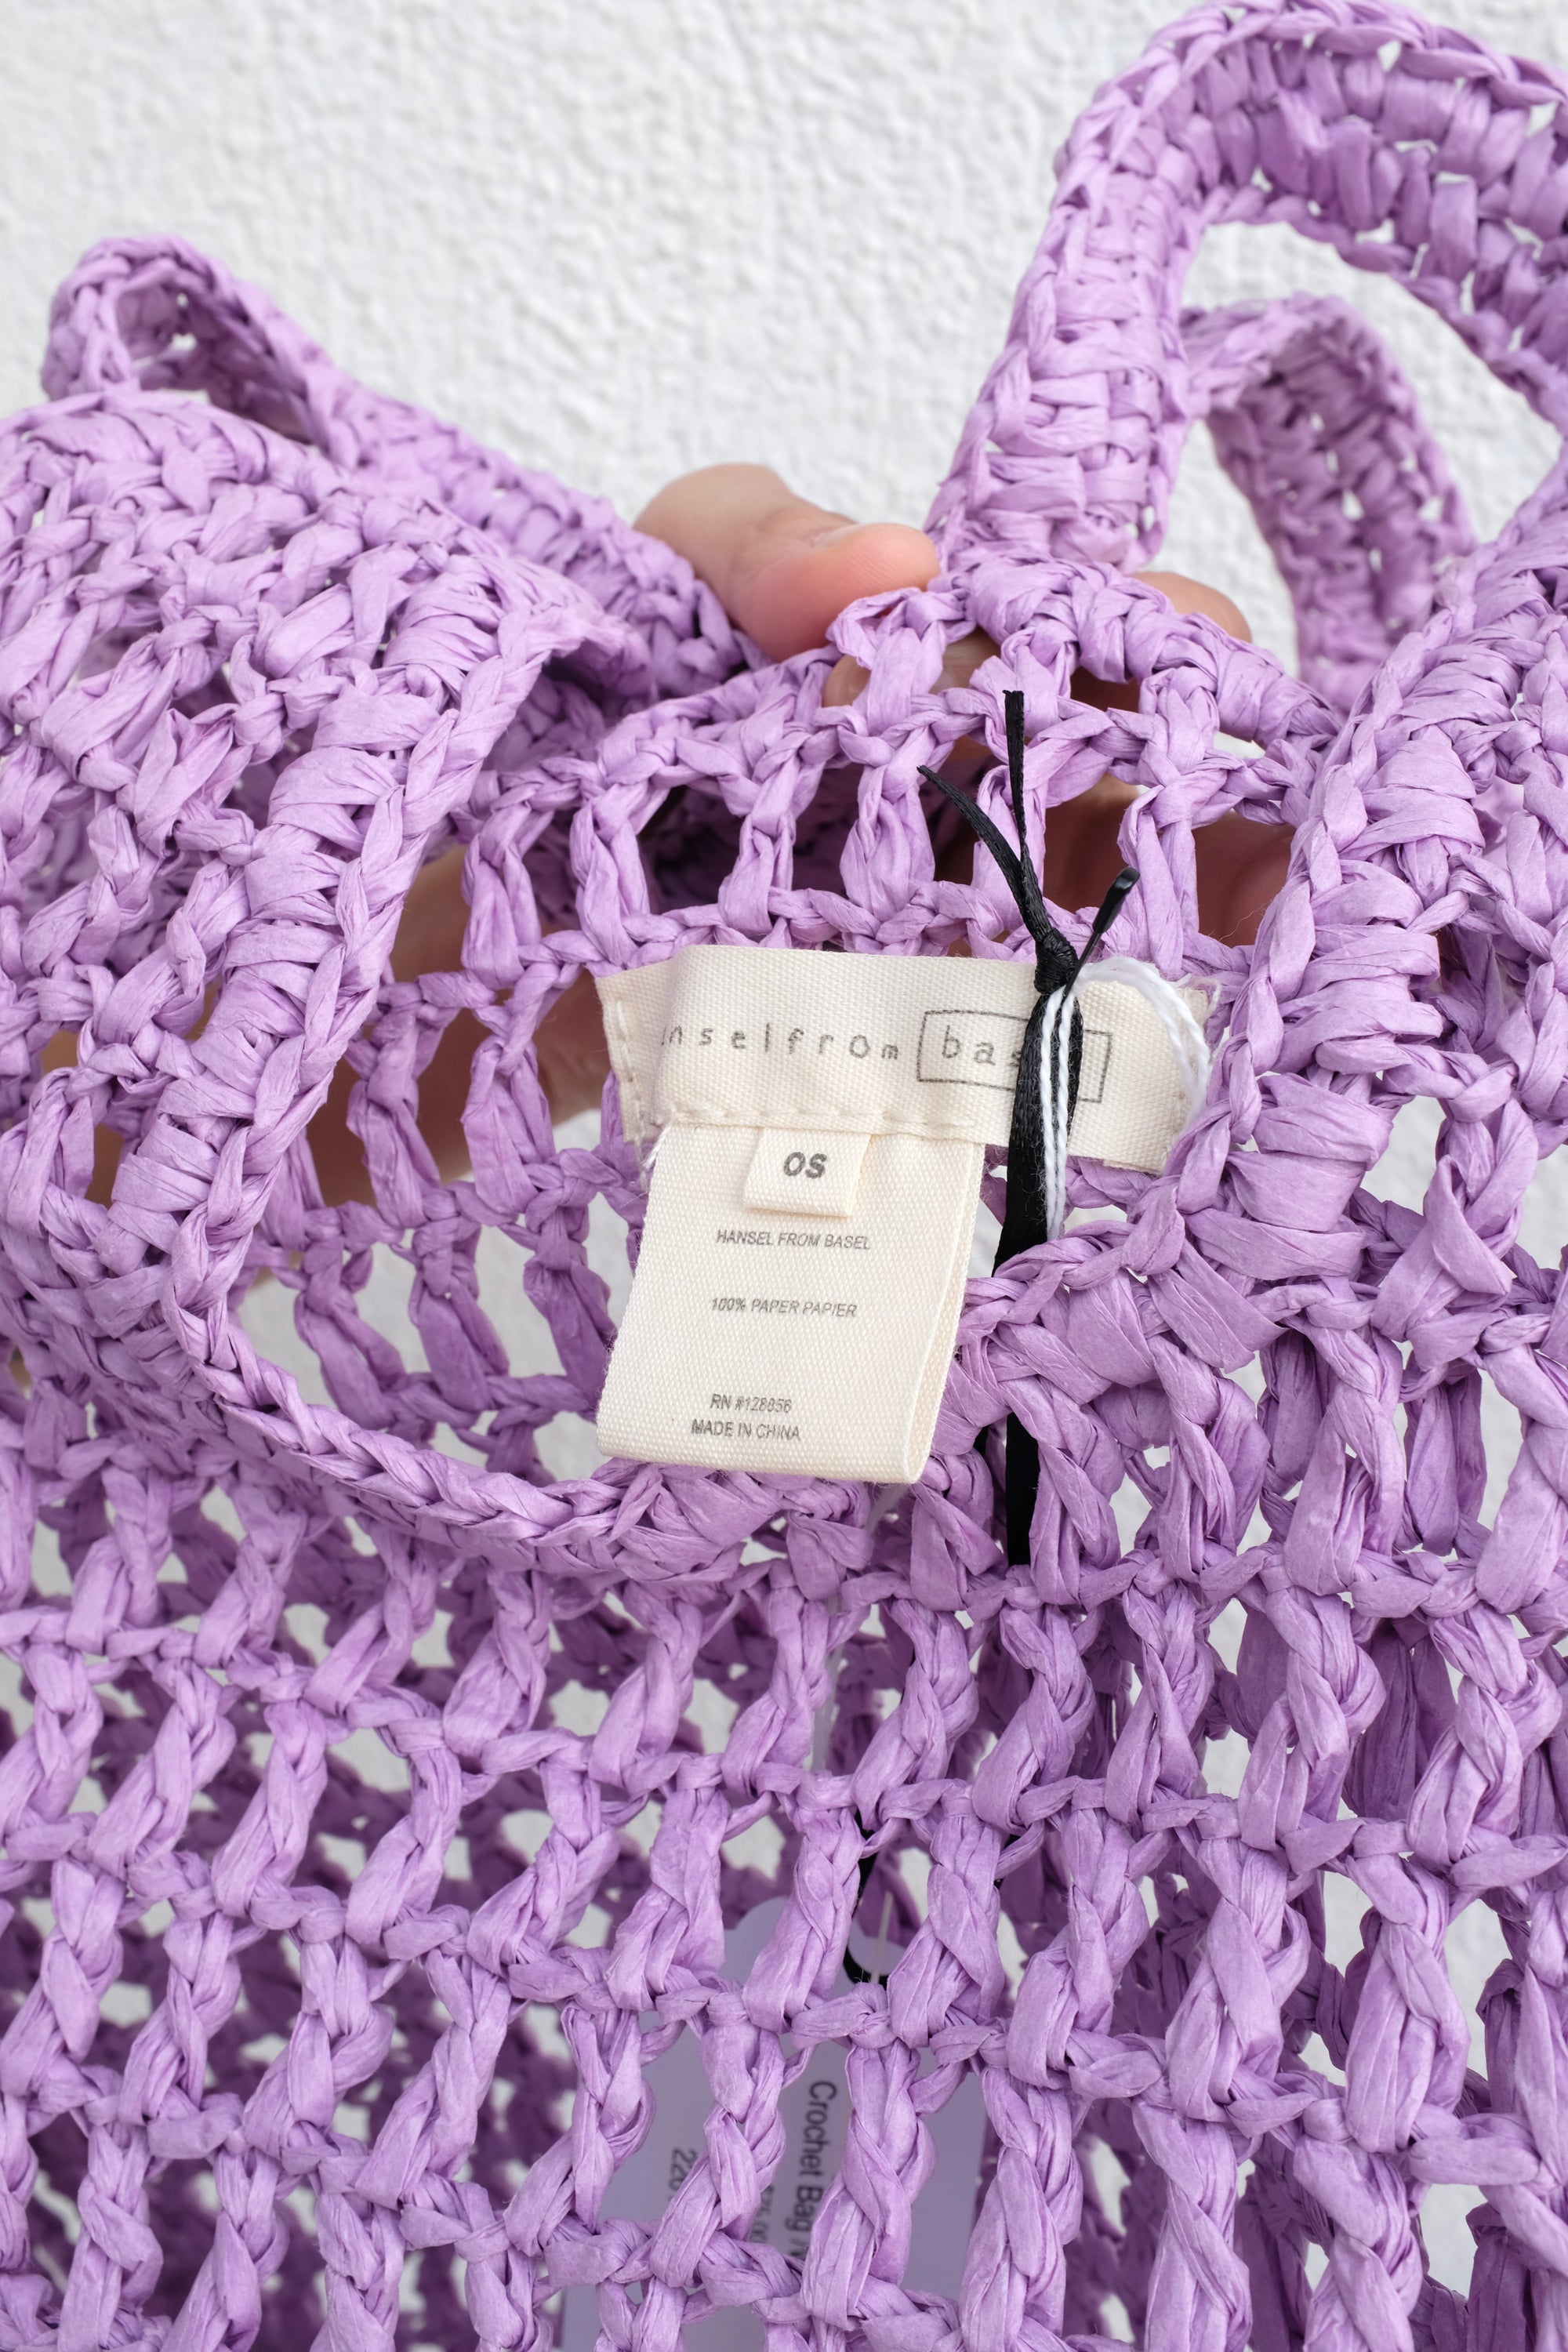 Hansel from Basel Crochet Bag / Wisteria